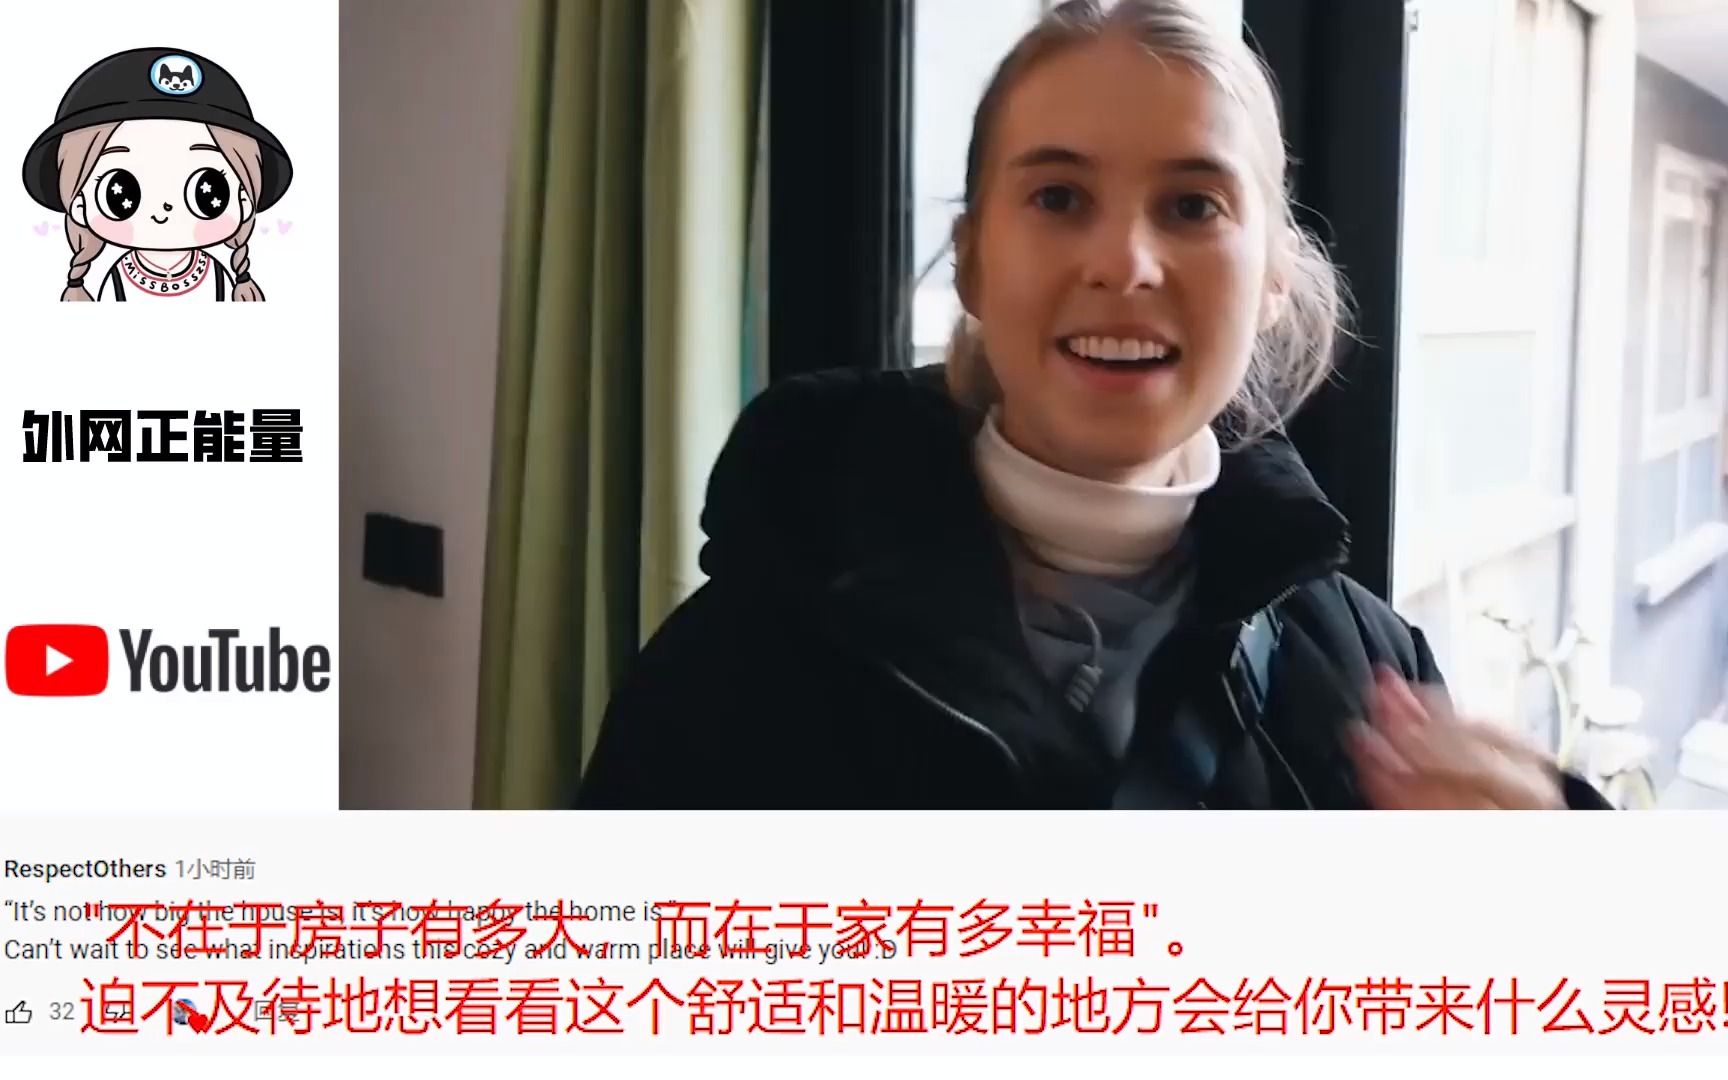 老外介绍在北京胡同新家视频火爆外网 外国网友看后表示“羡慕”